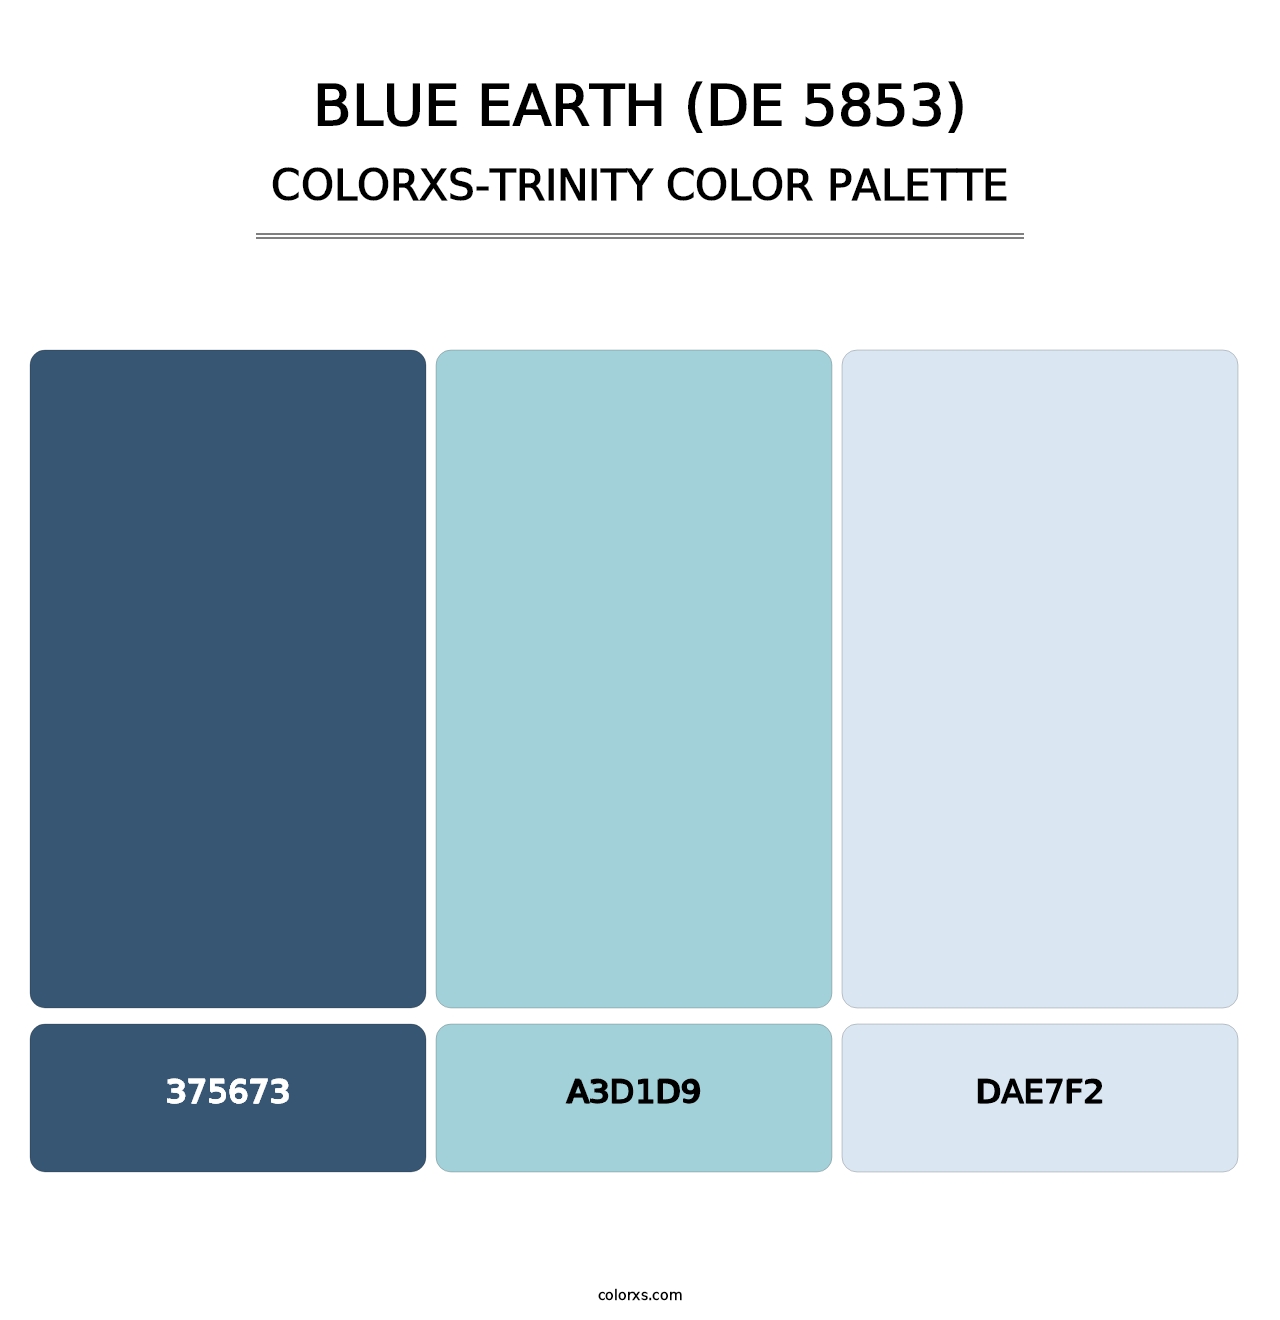 Blue Earth (DE 5853) - Colorxs Trinity Palette